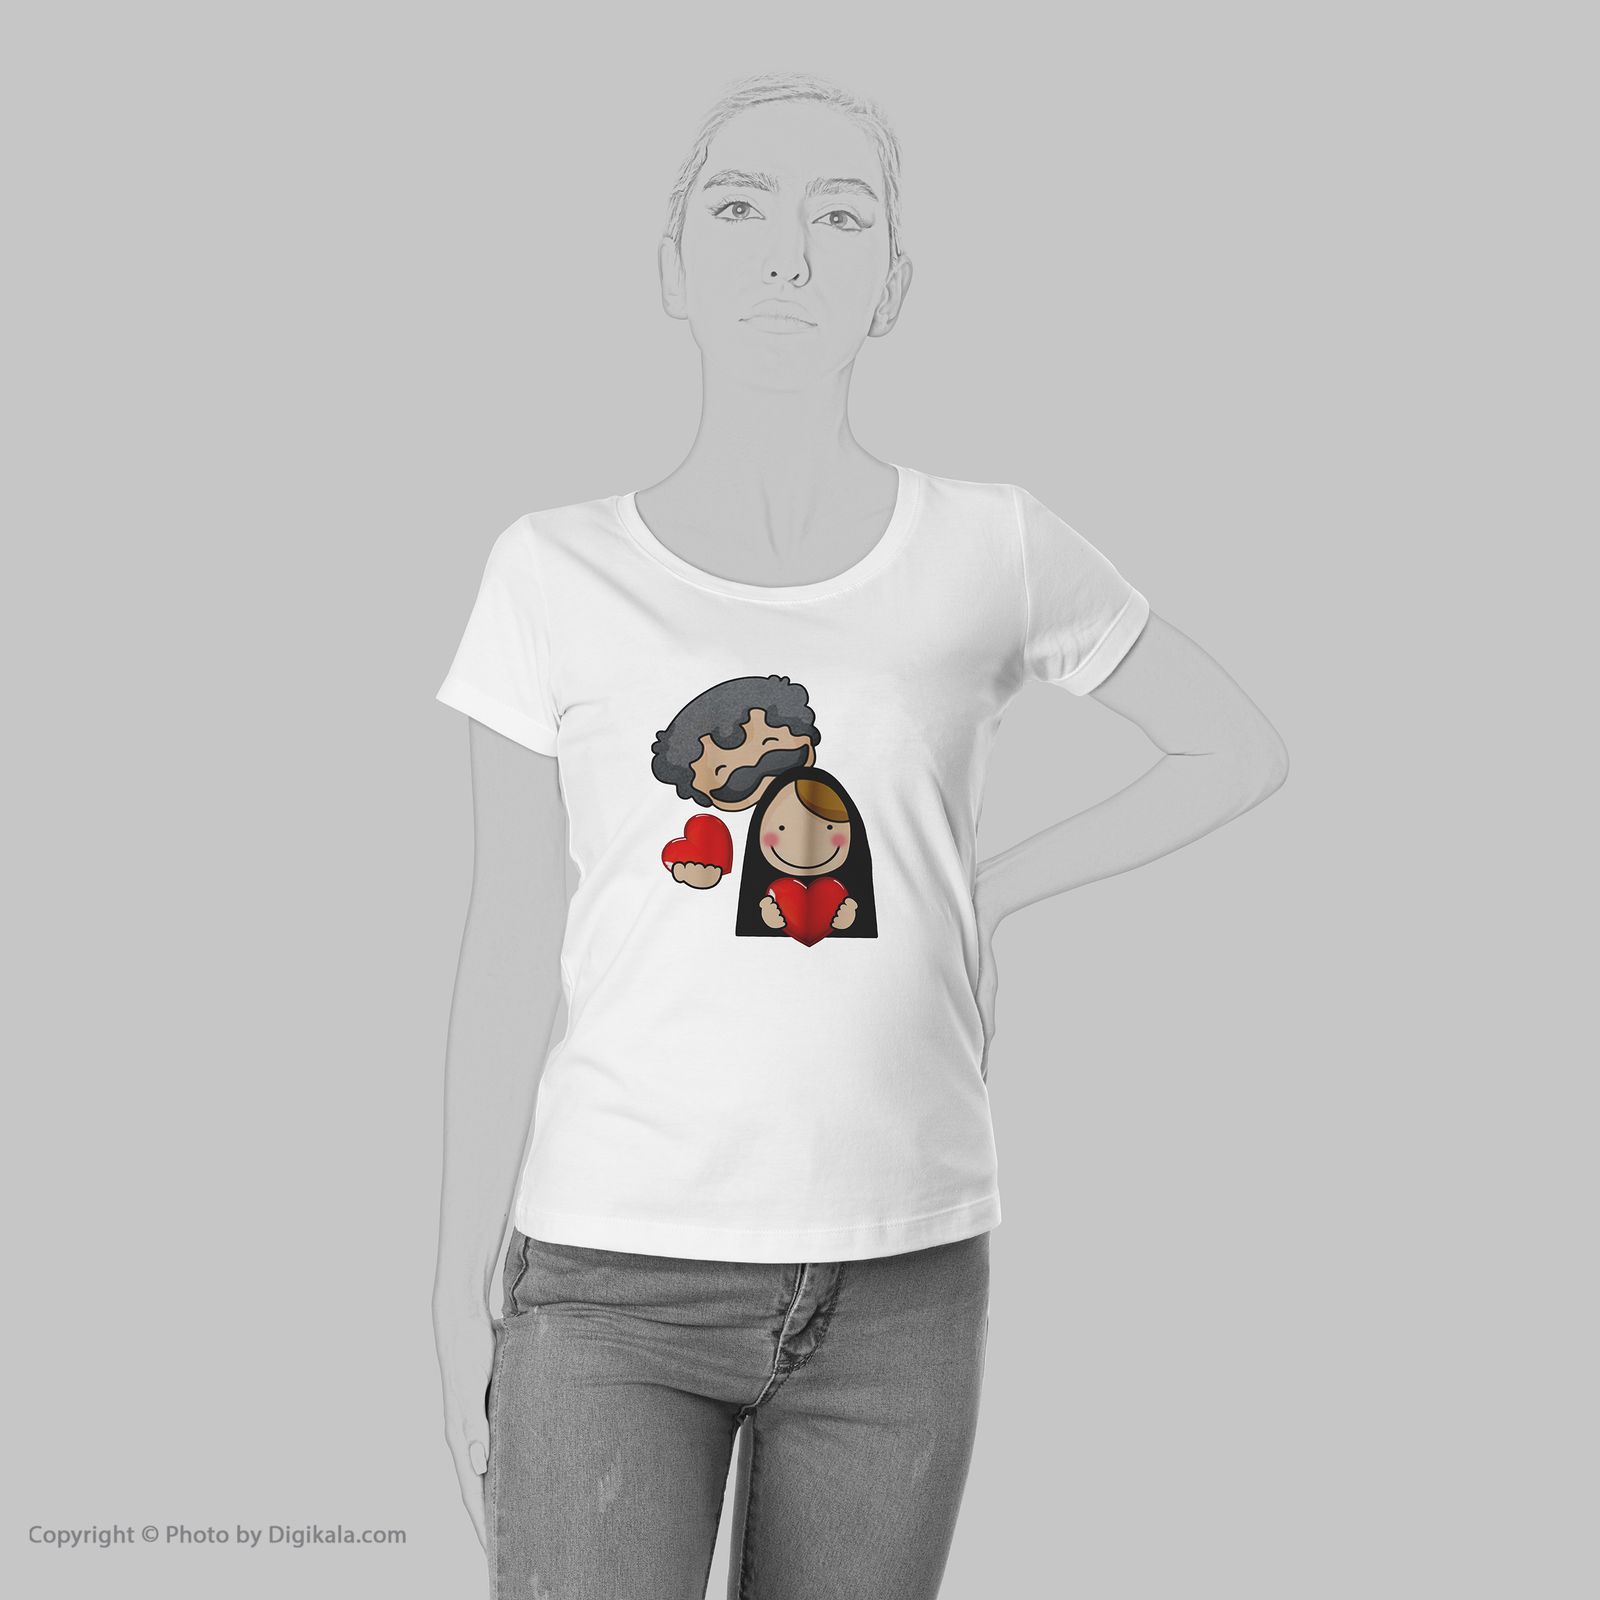 تی شرت زنانه به رسم طرح زوج کد 577 -  - 6